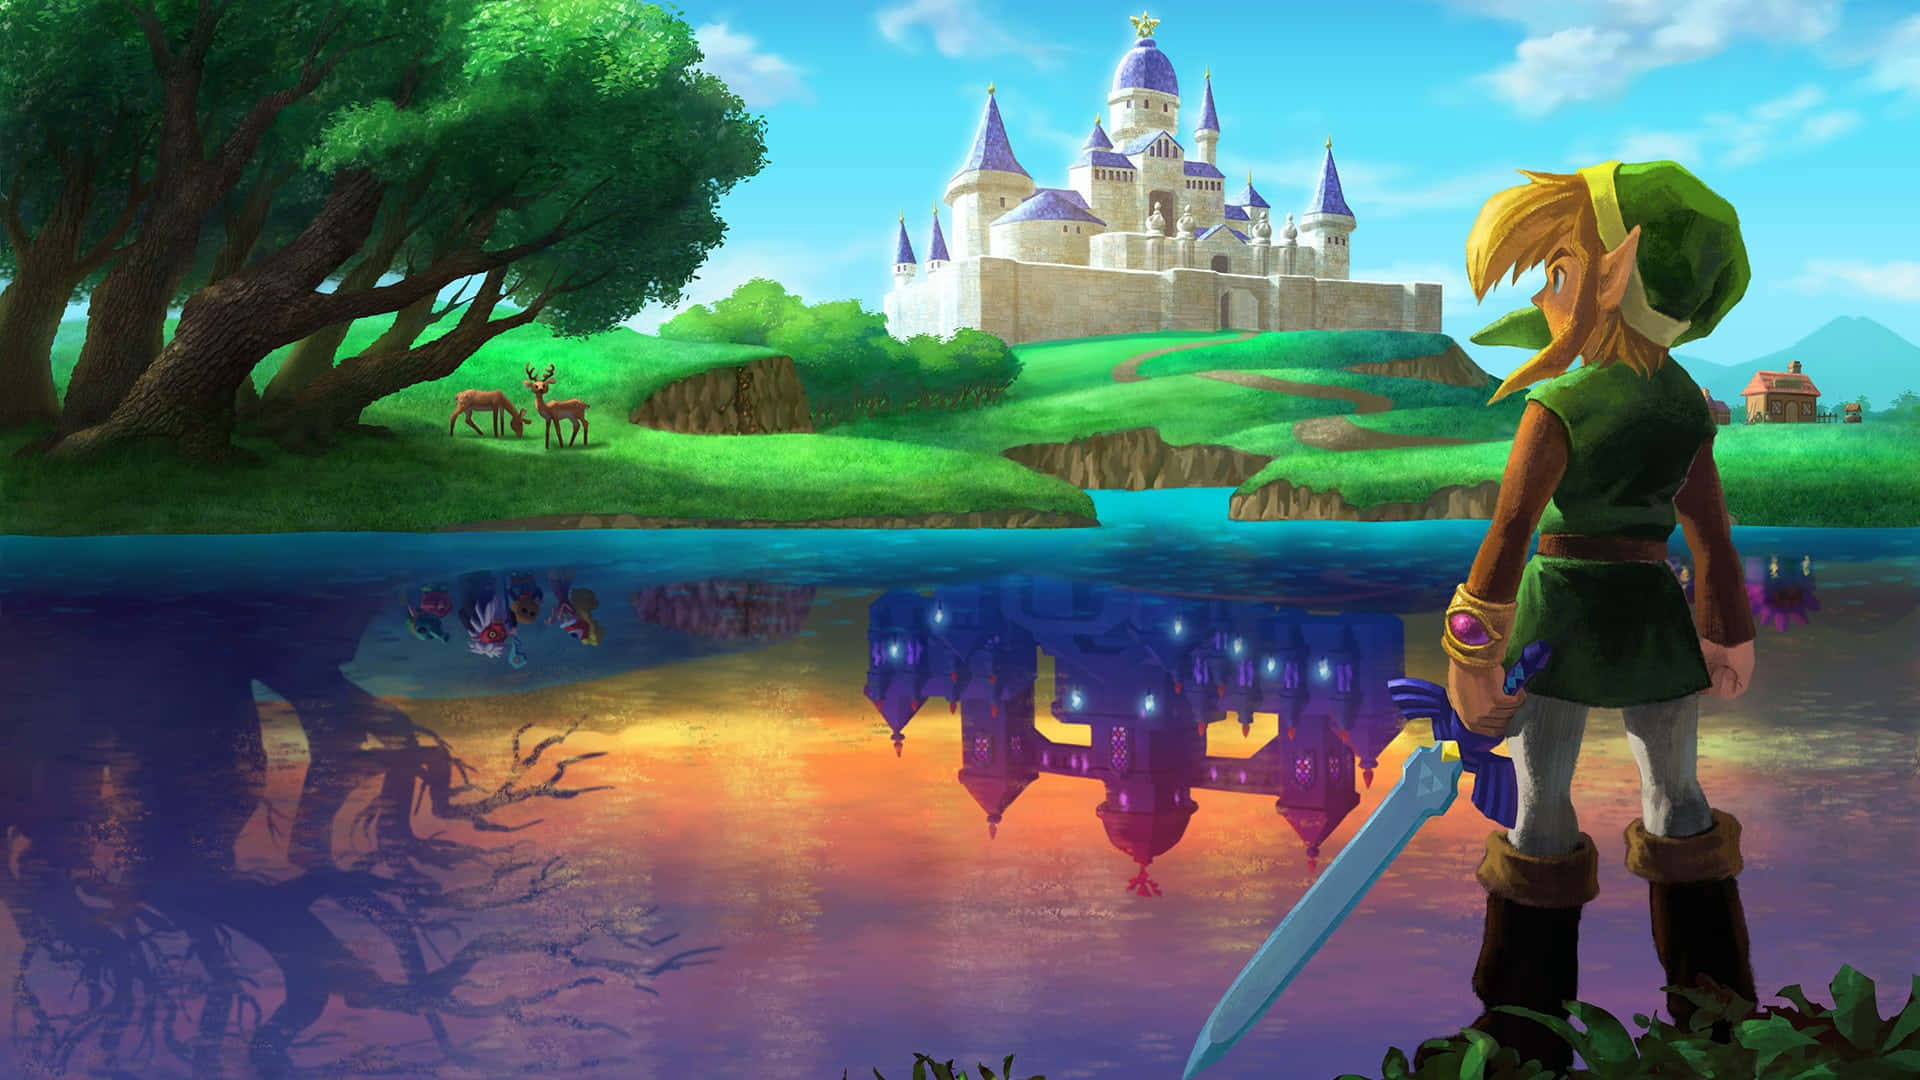 Bereit,um In Die Mythologische Welt Von The Legend Of Zelda Einzutauchen? Hier Ist Der Link!